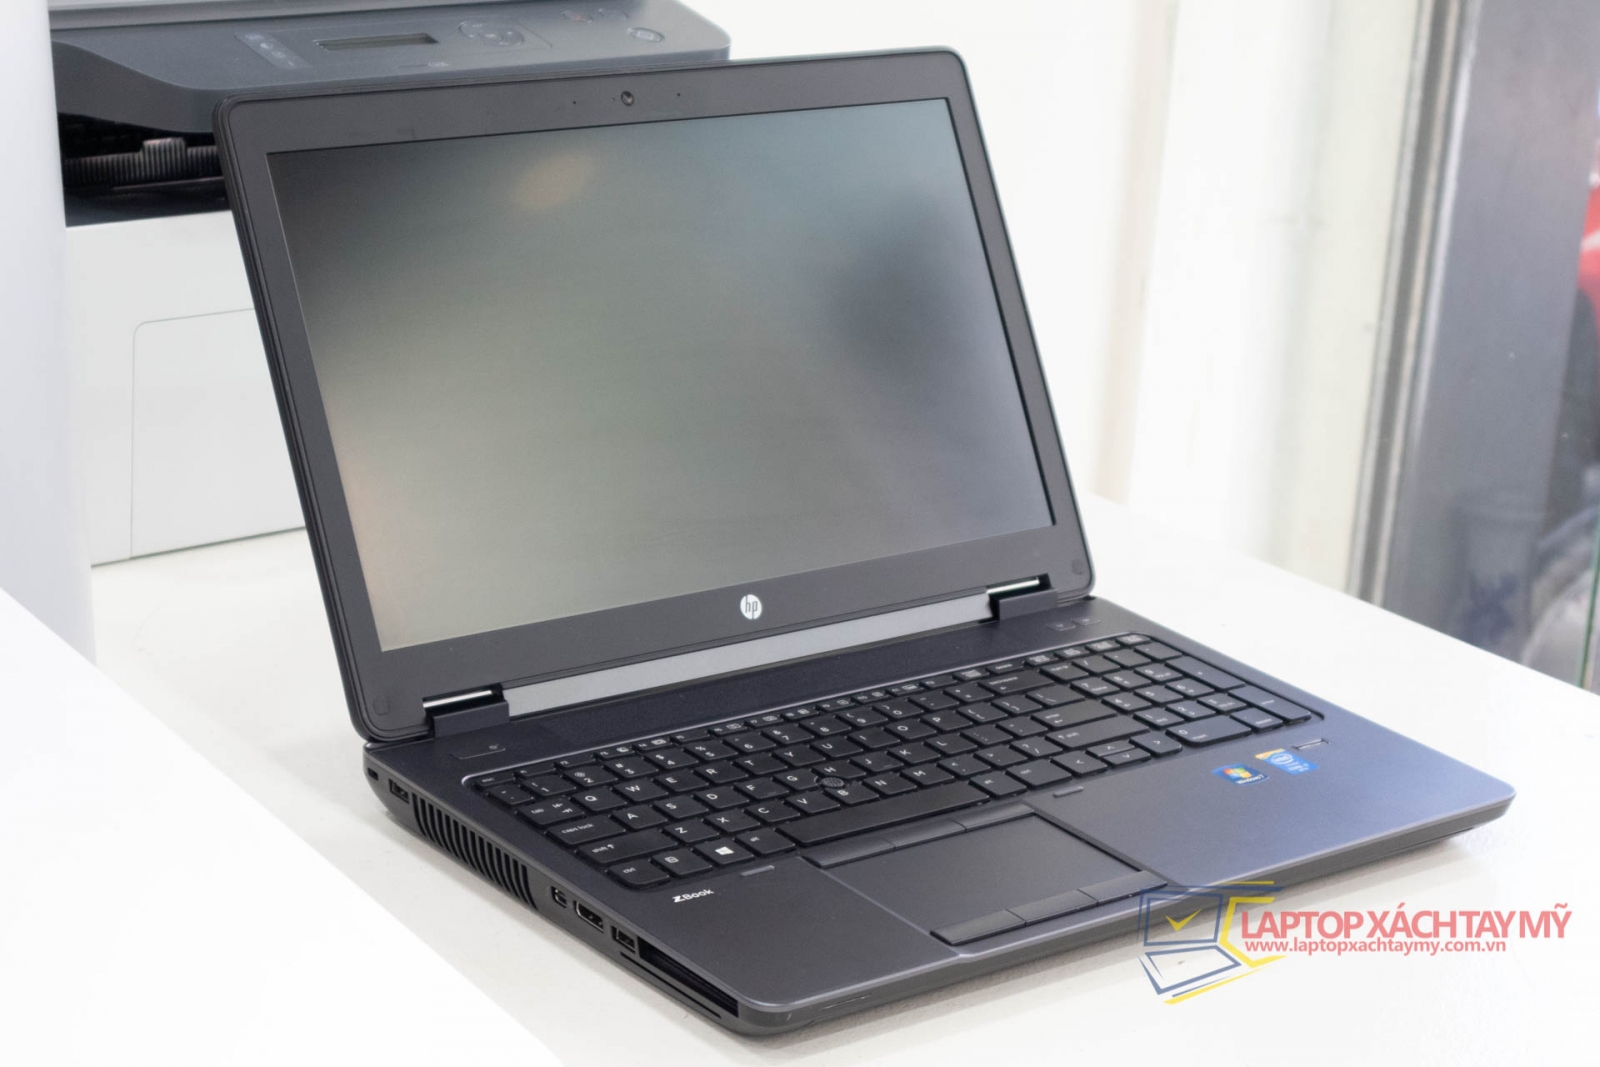 Laptop cũ tp HCM HP ZBOOK 15 G2 i7-4810MQ, 8G RAM, SSD 256GB, K2100M 2GB